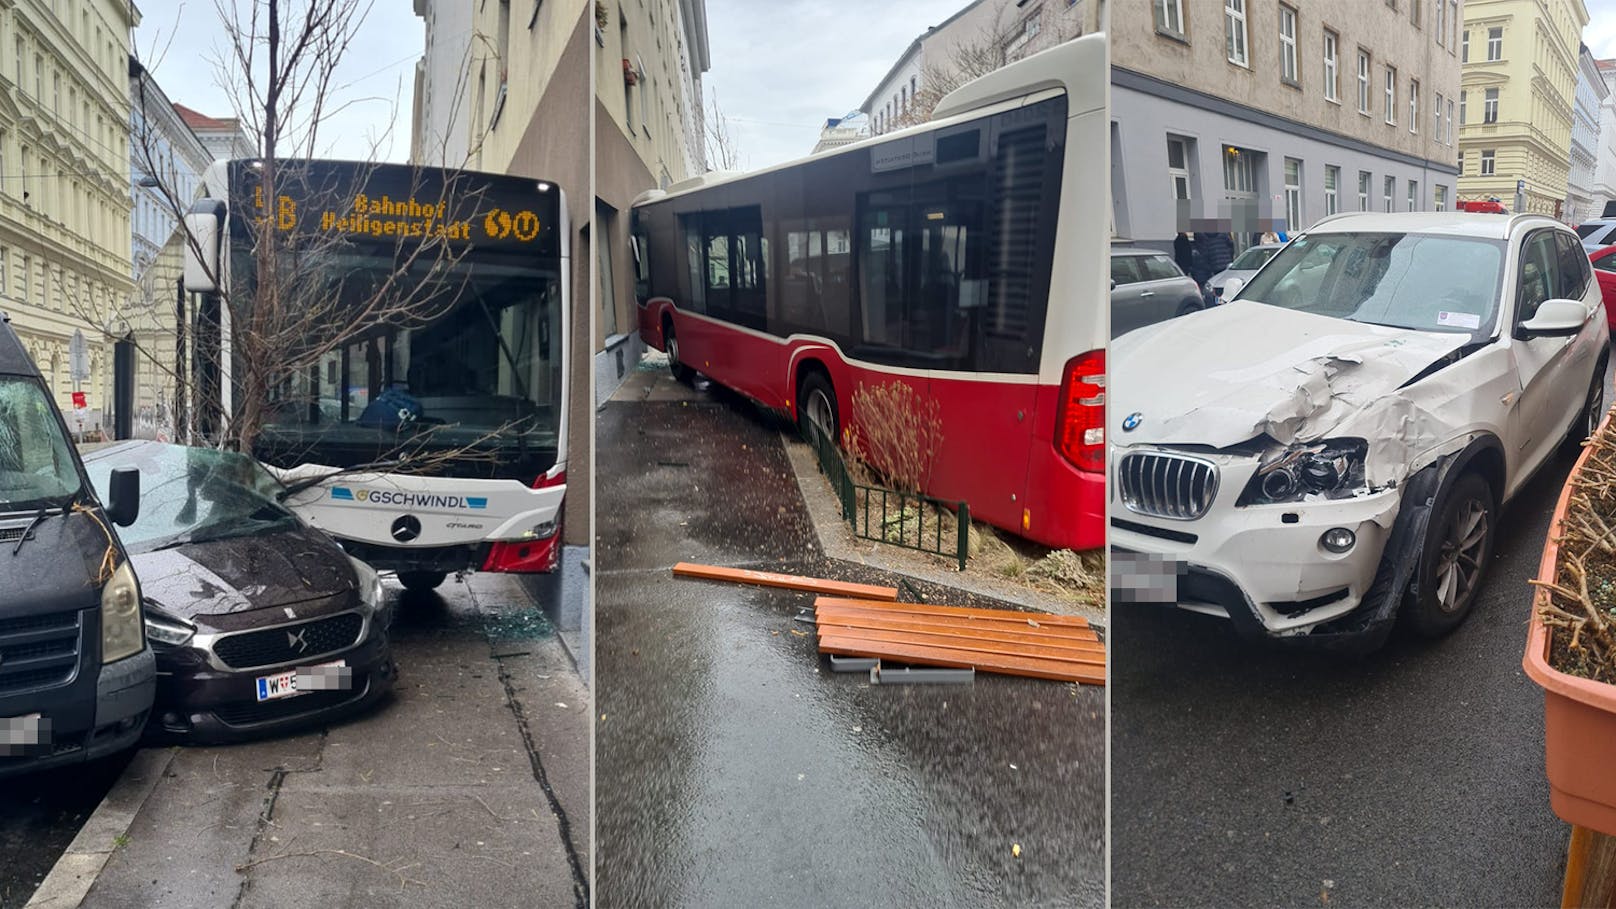 Schwerer Öffi-Crash in Wien – Parkende Autos beschädigt – Community